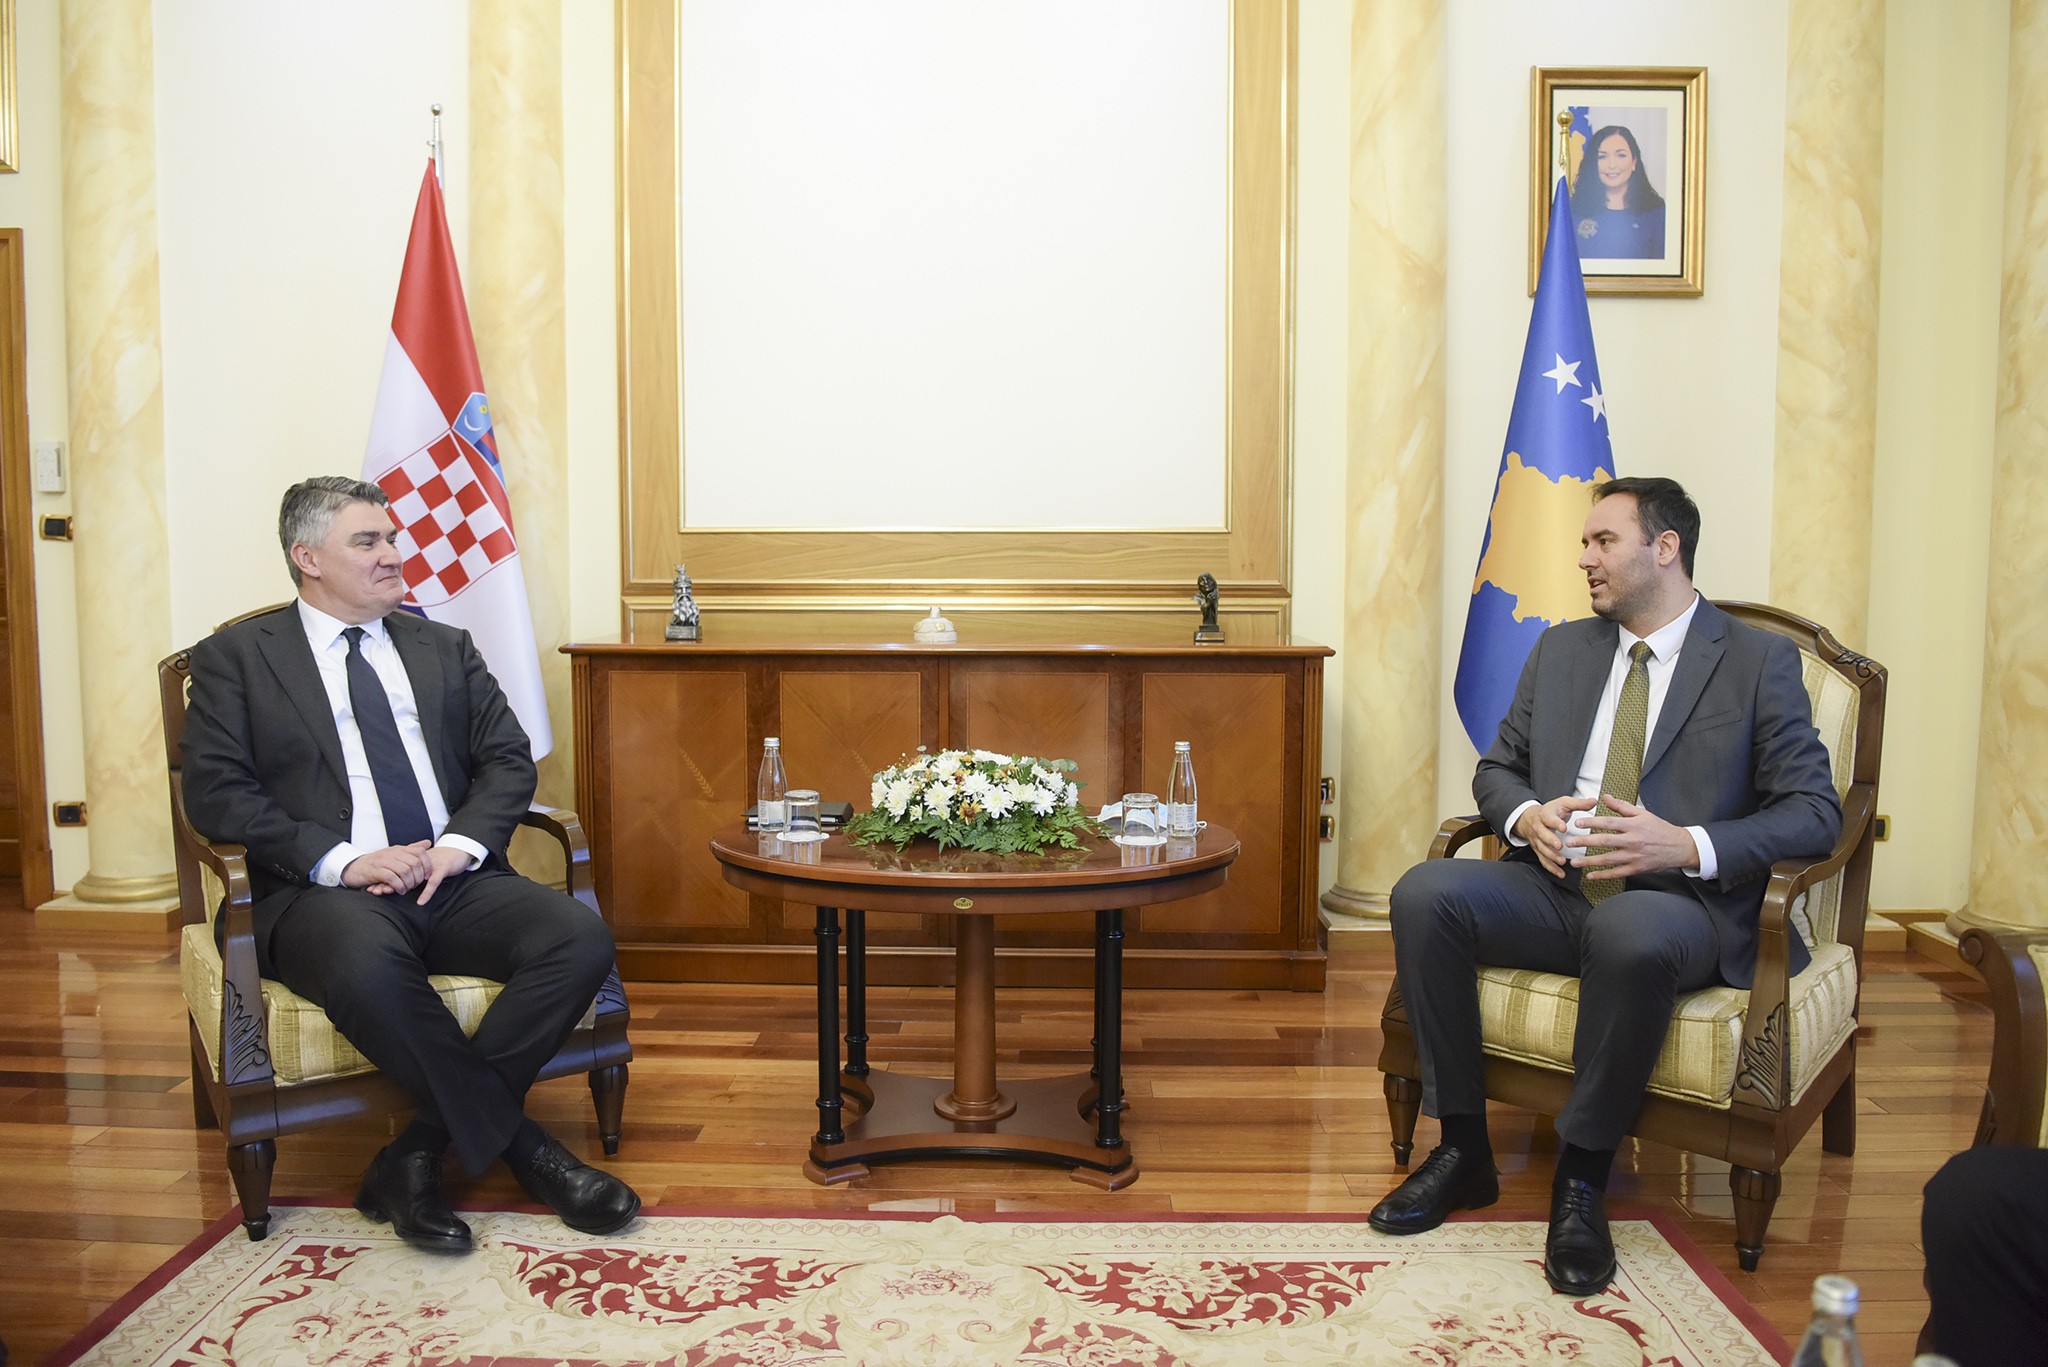 Kryetari Konjufca priti në takim presidentin e Kroacisë, Zoran Milanović